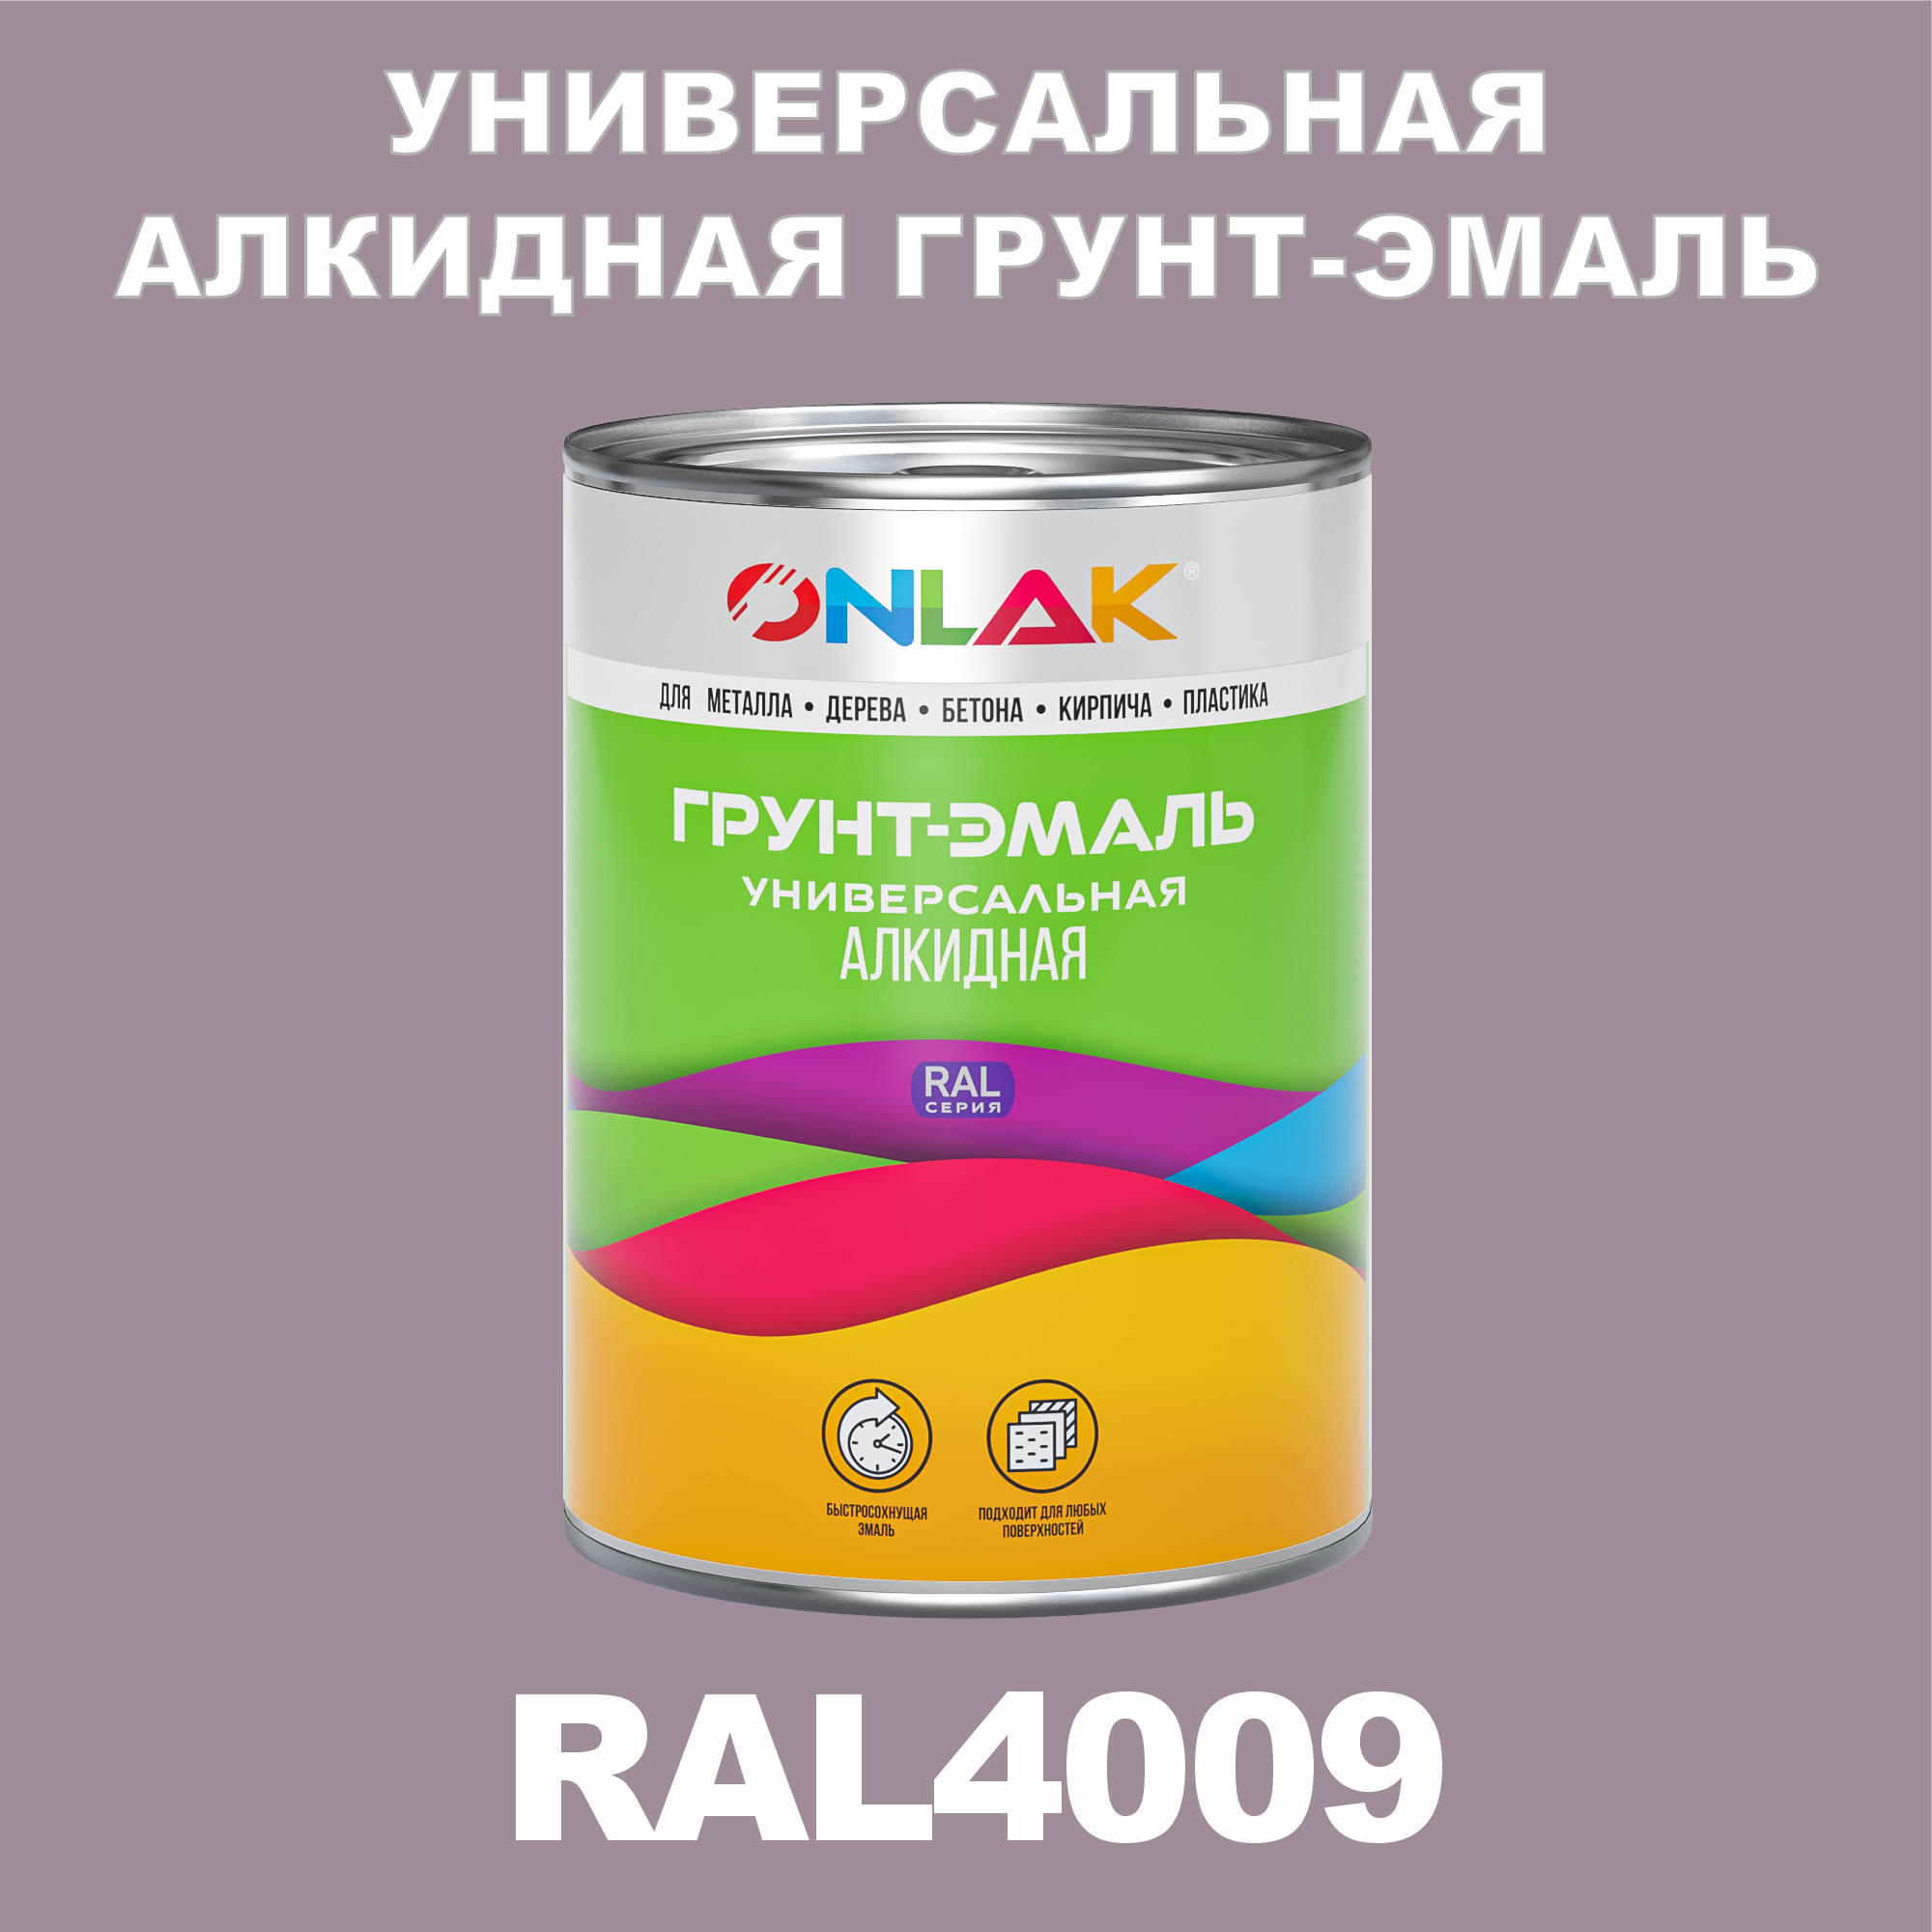 Грунт-эмаль ONLAK 1К RAL4009 антикоррозионная алкидная по металлу по ржавчине 1 кг